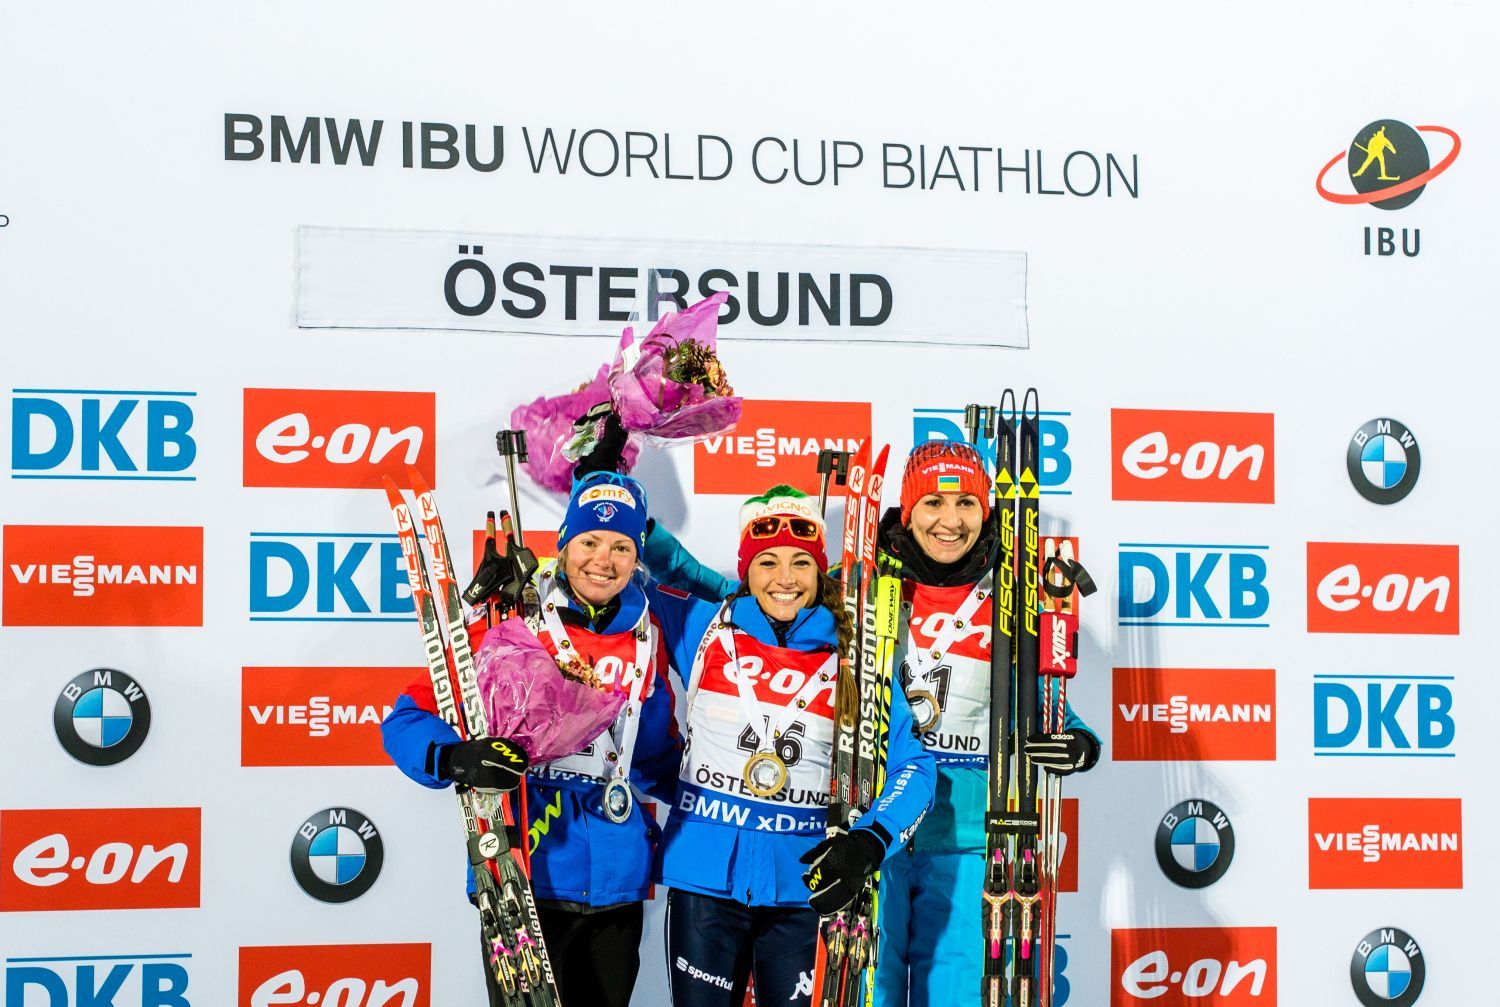 SP v Östersundu, 15 km Ž: Marie Dorinová-Habertová, Dorothea Wiererová a Olena Pidhrušná